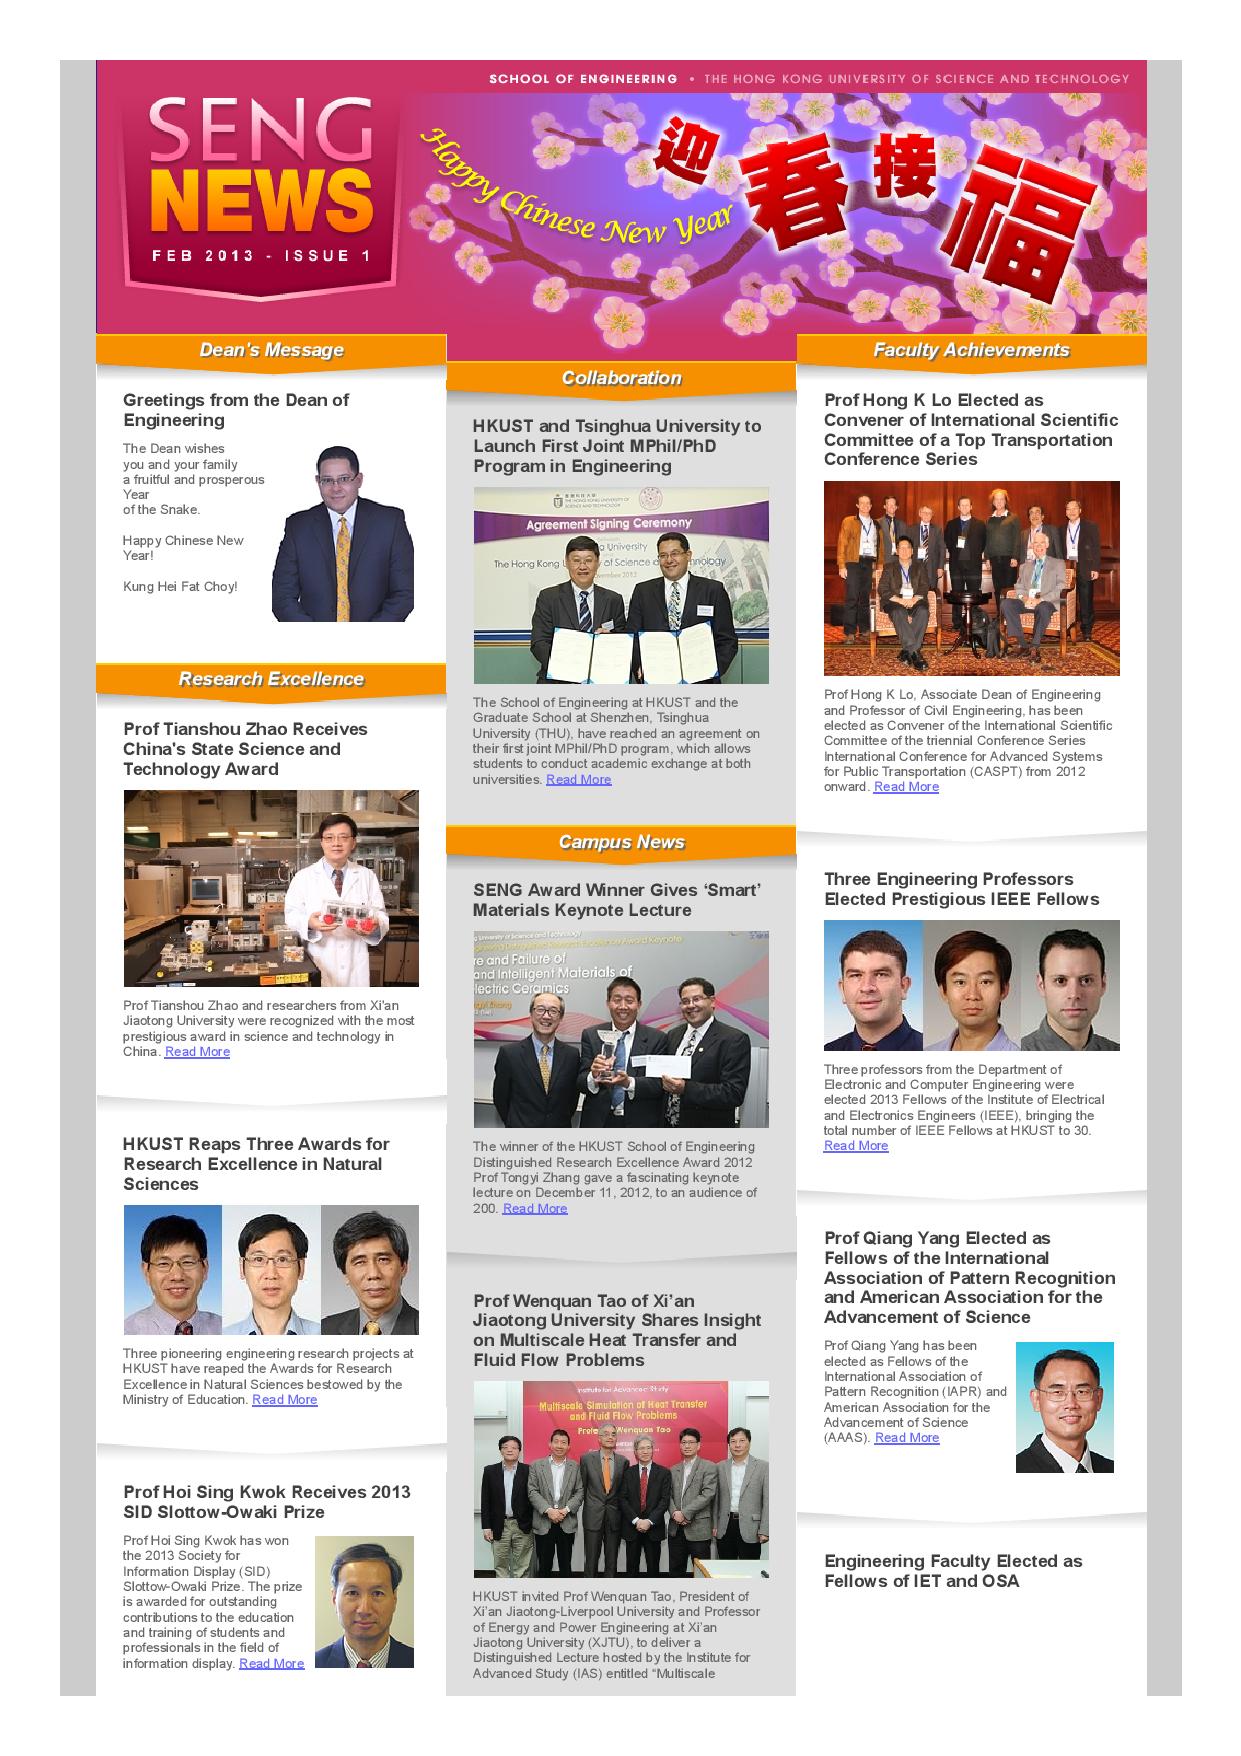 SENG eNews (Issue 1 - Feb 2013)